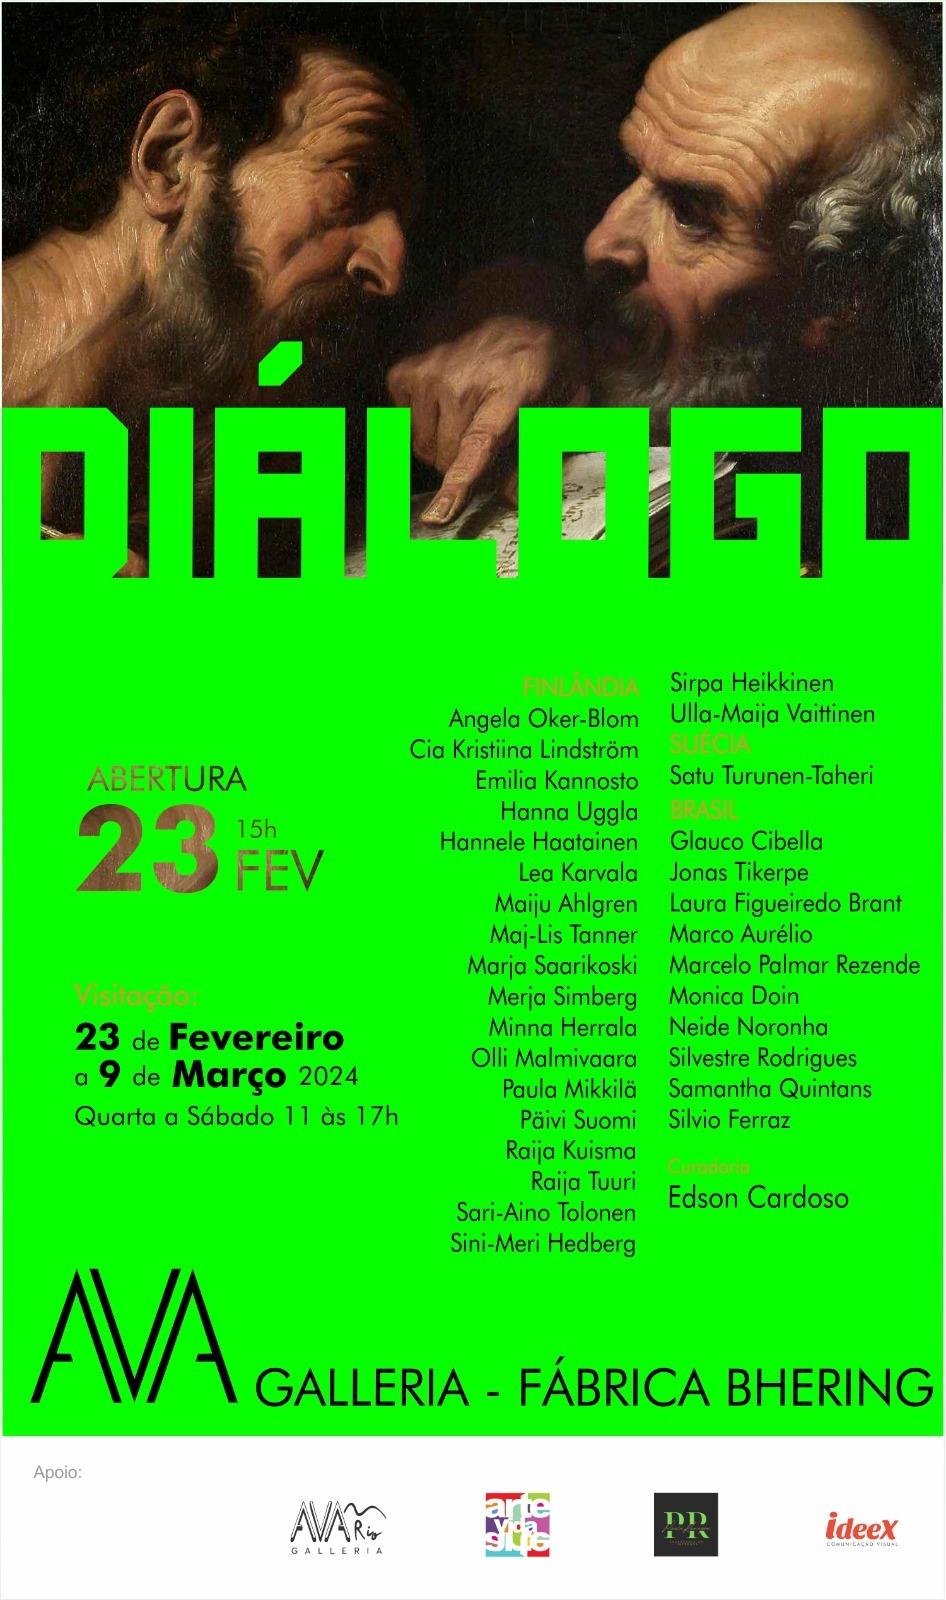 Diálogos: Exposição na Ava Galleria Rio promove encontro intercultural através da arte